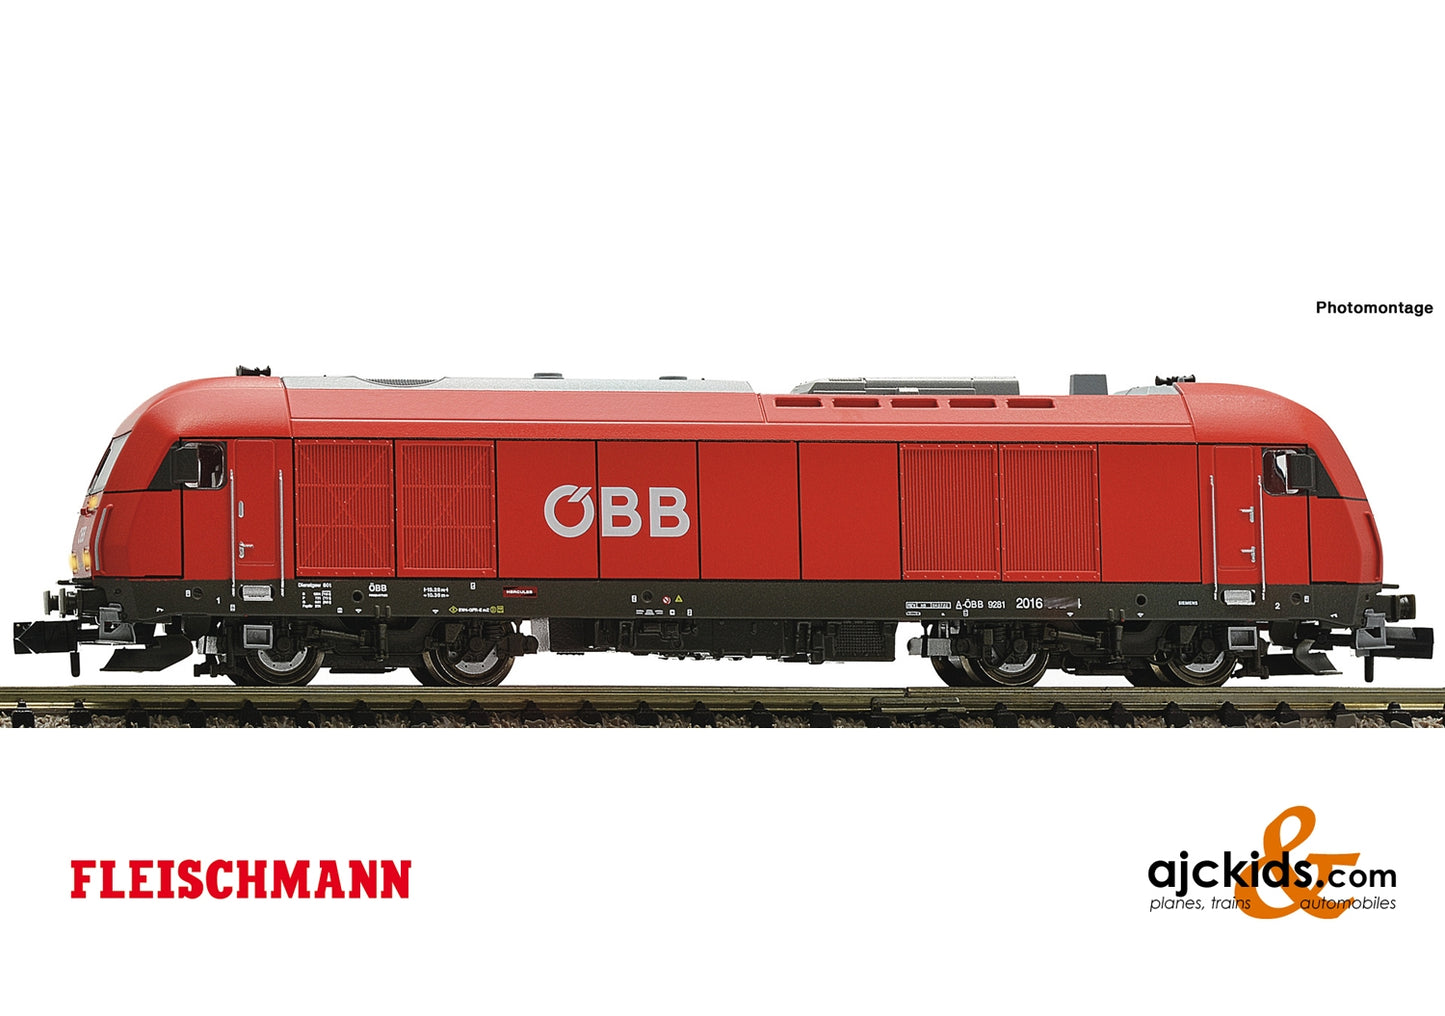 Fleischmann 726019 - Diesel locomotive class 2016